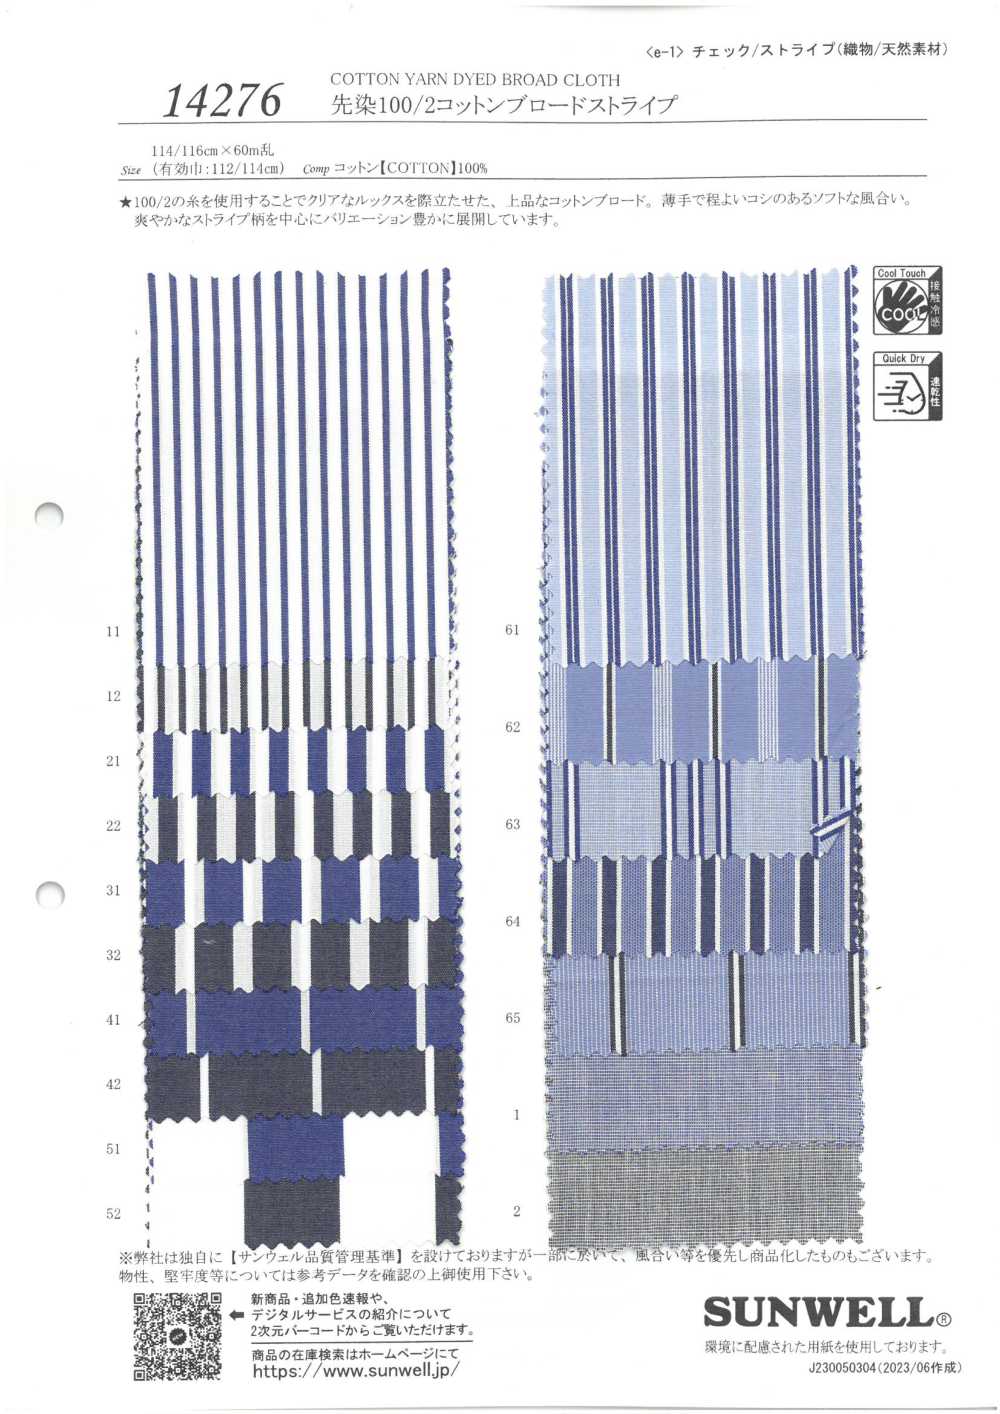 14276 Listra De Pano De Algodão 100/2 Tingido Com Fio[Têxtil / Tecido] SUNWELL